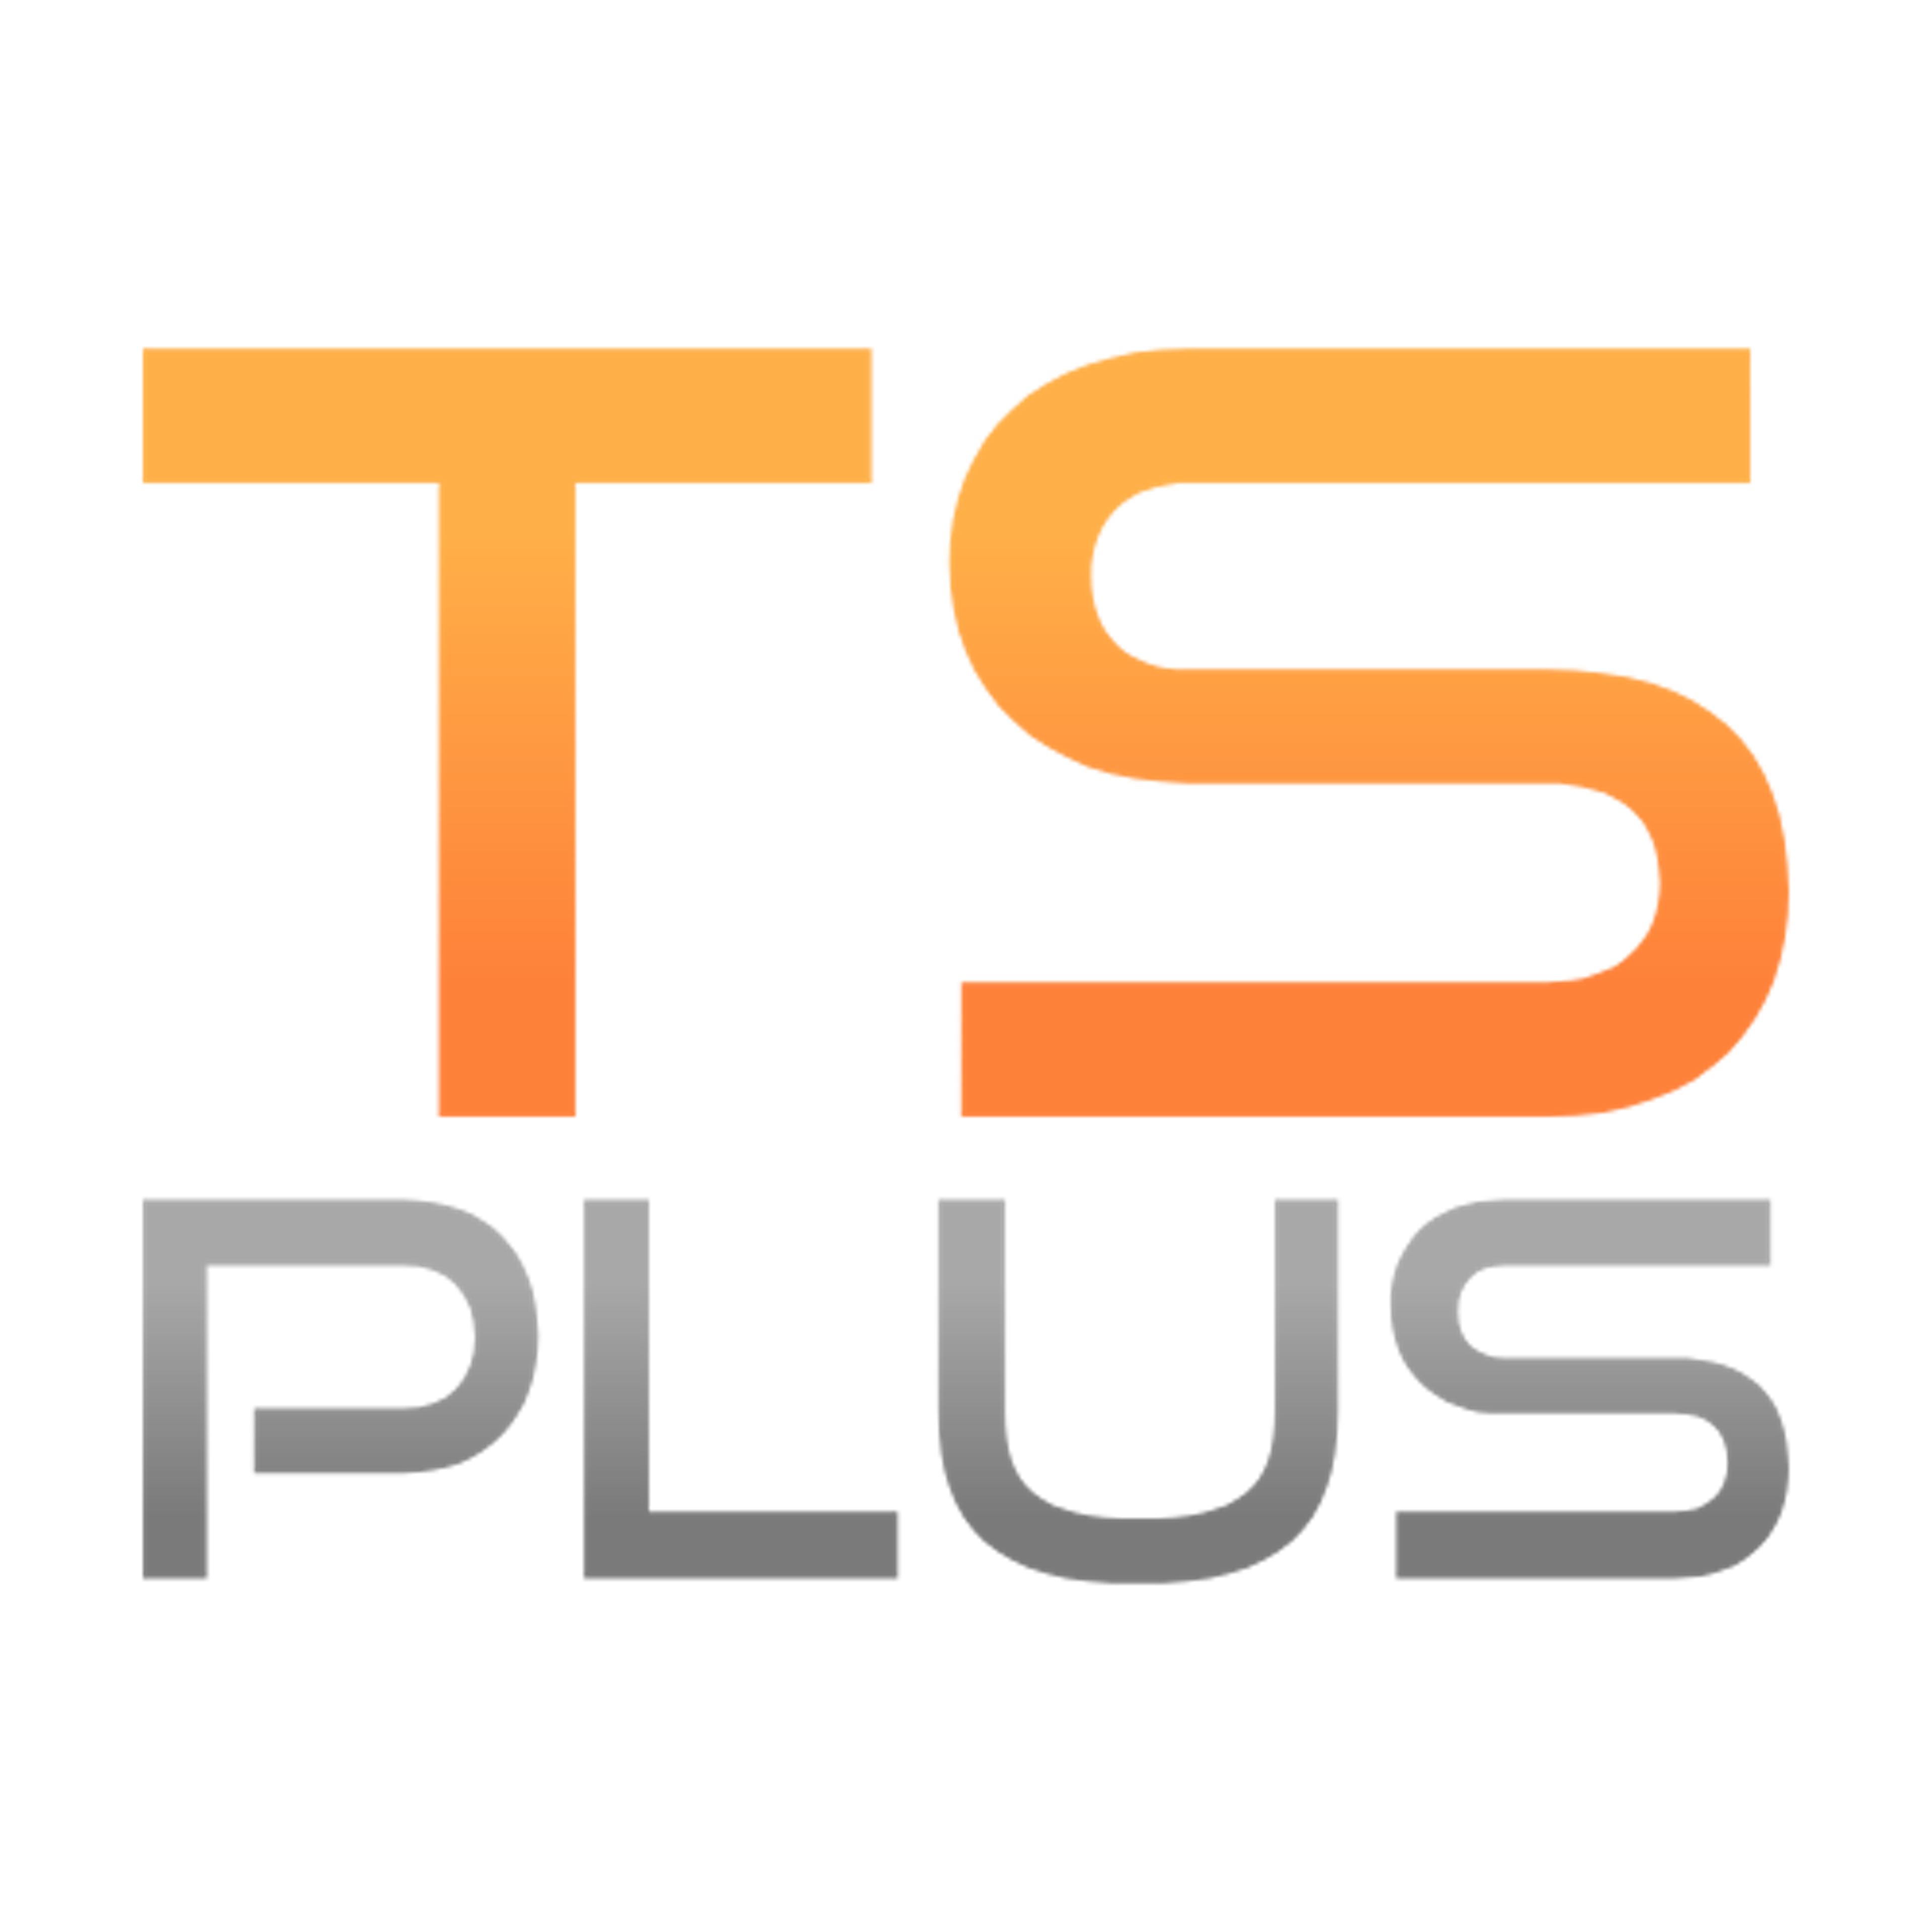 TSPlus Logo